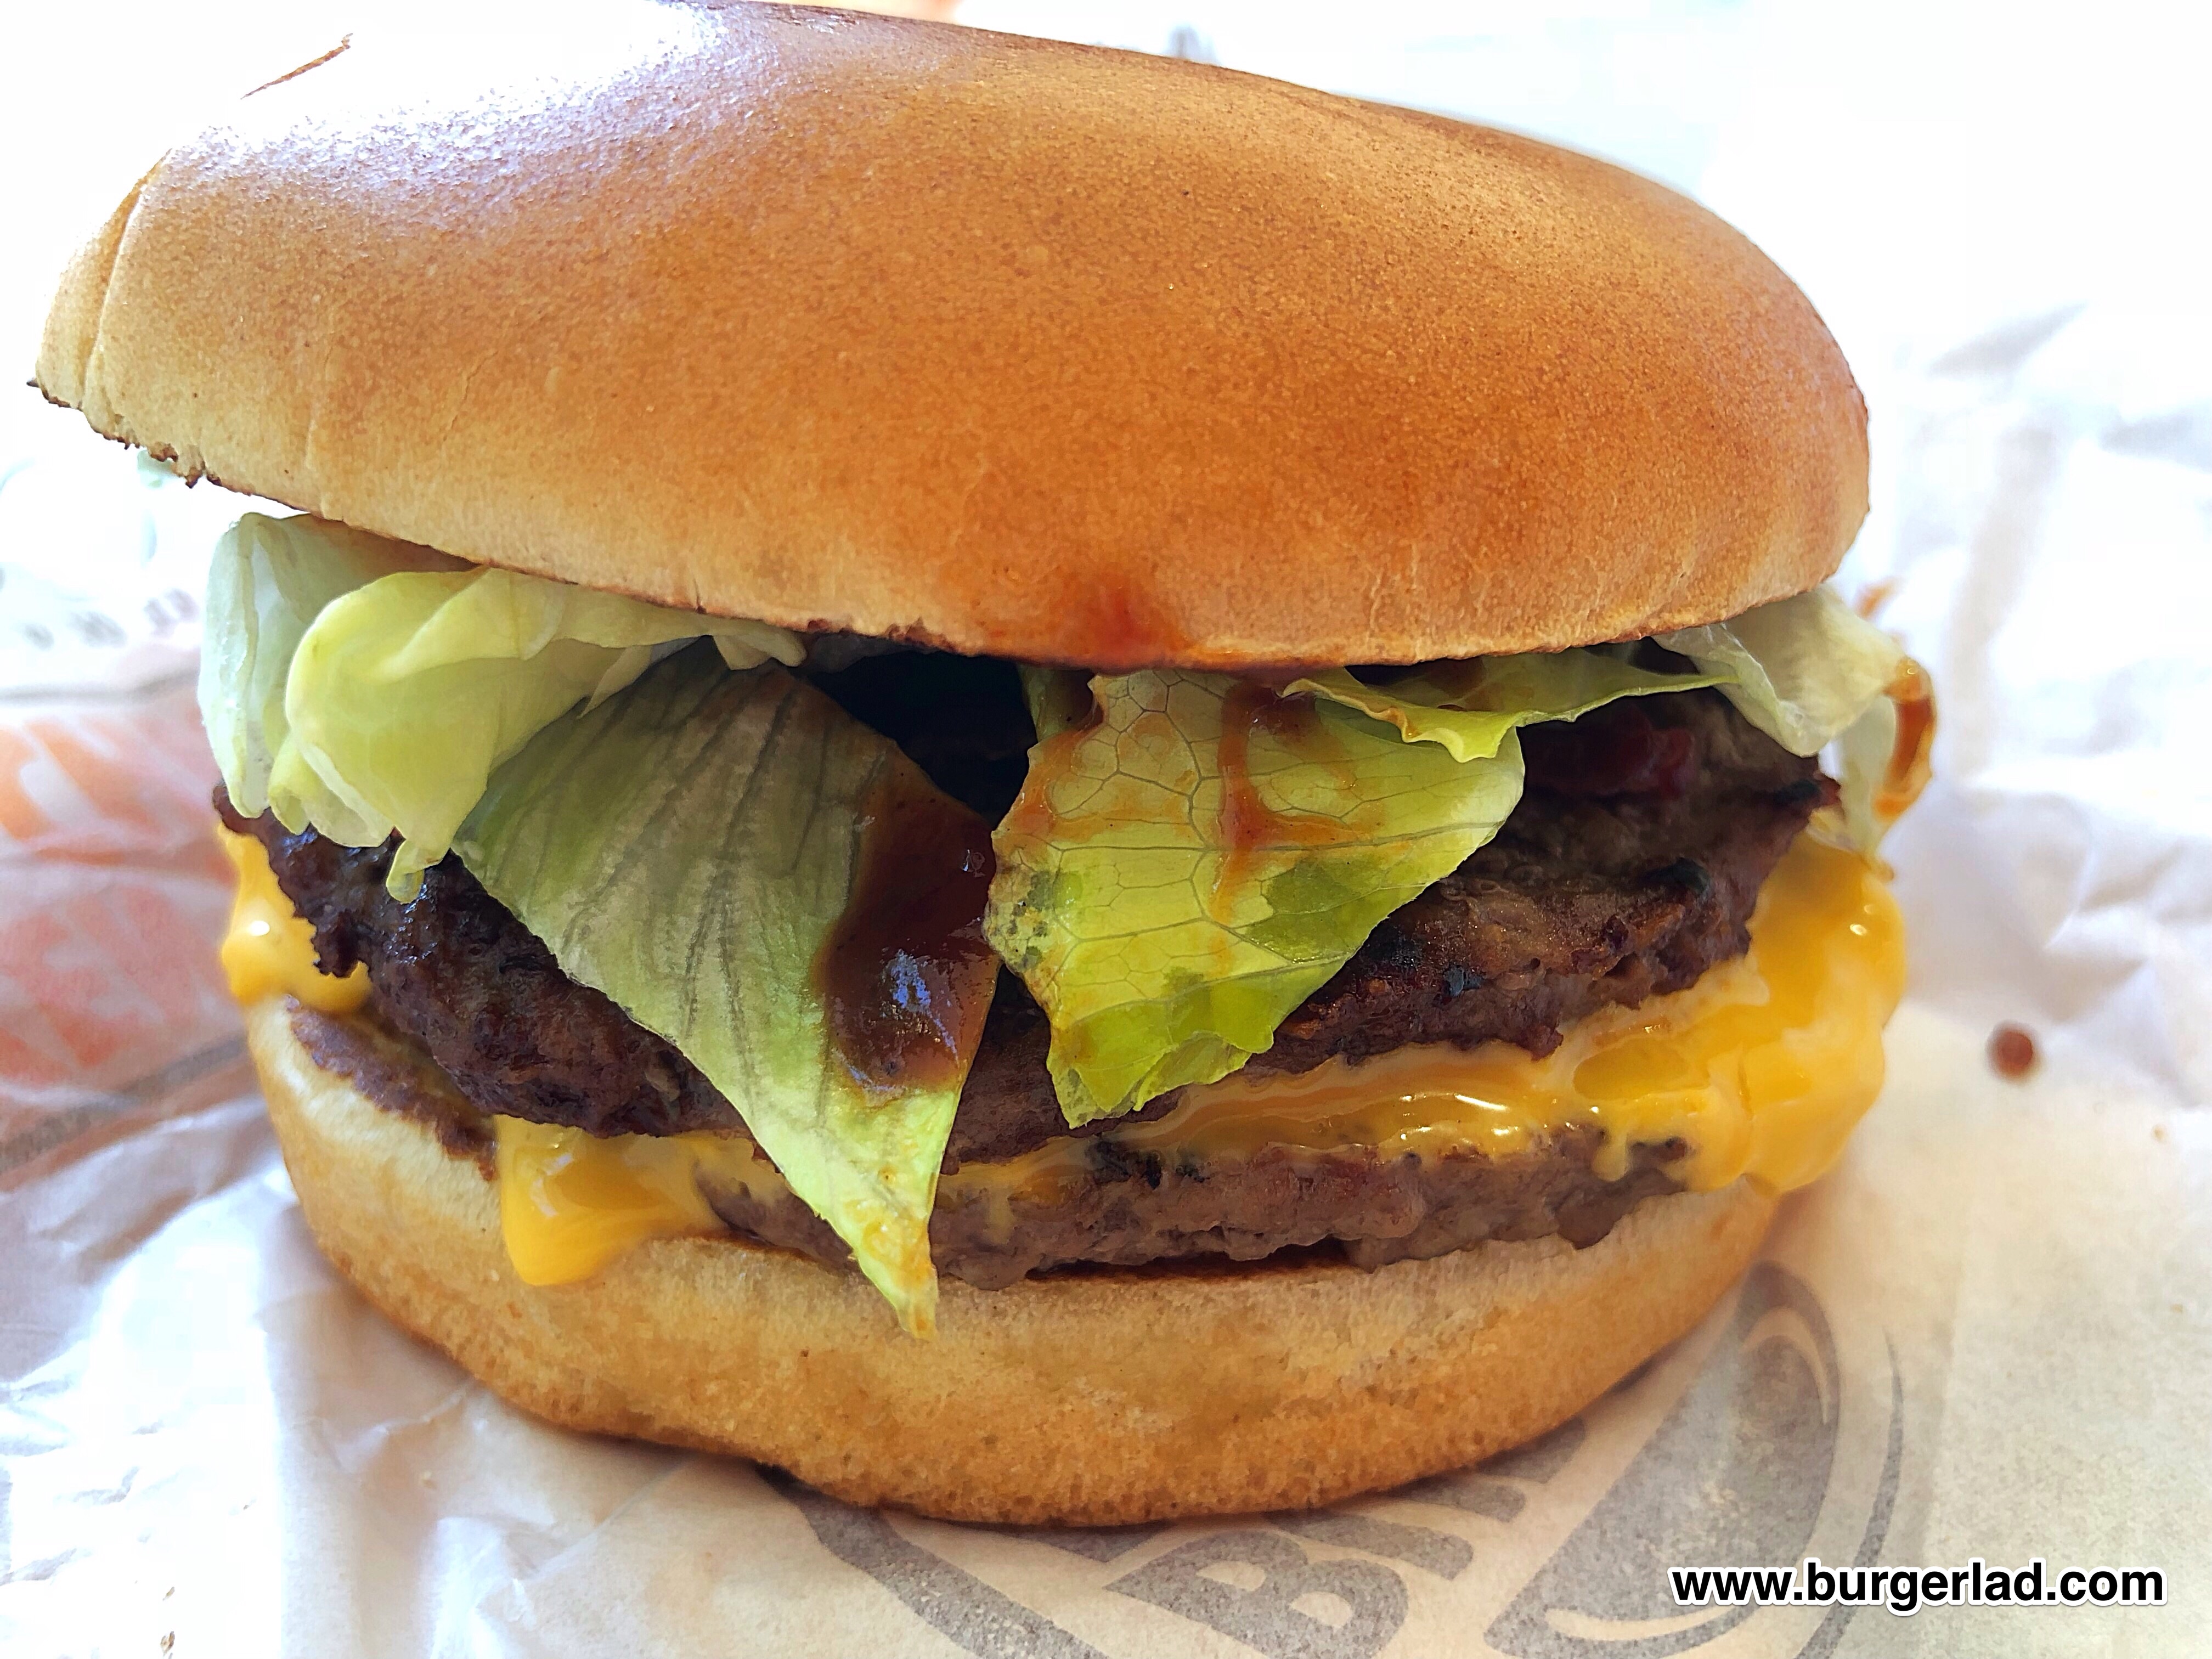 Burger King Jalapeño BBQ Double XL